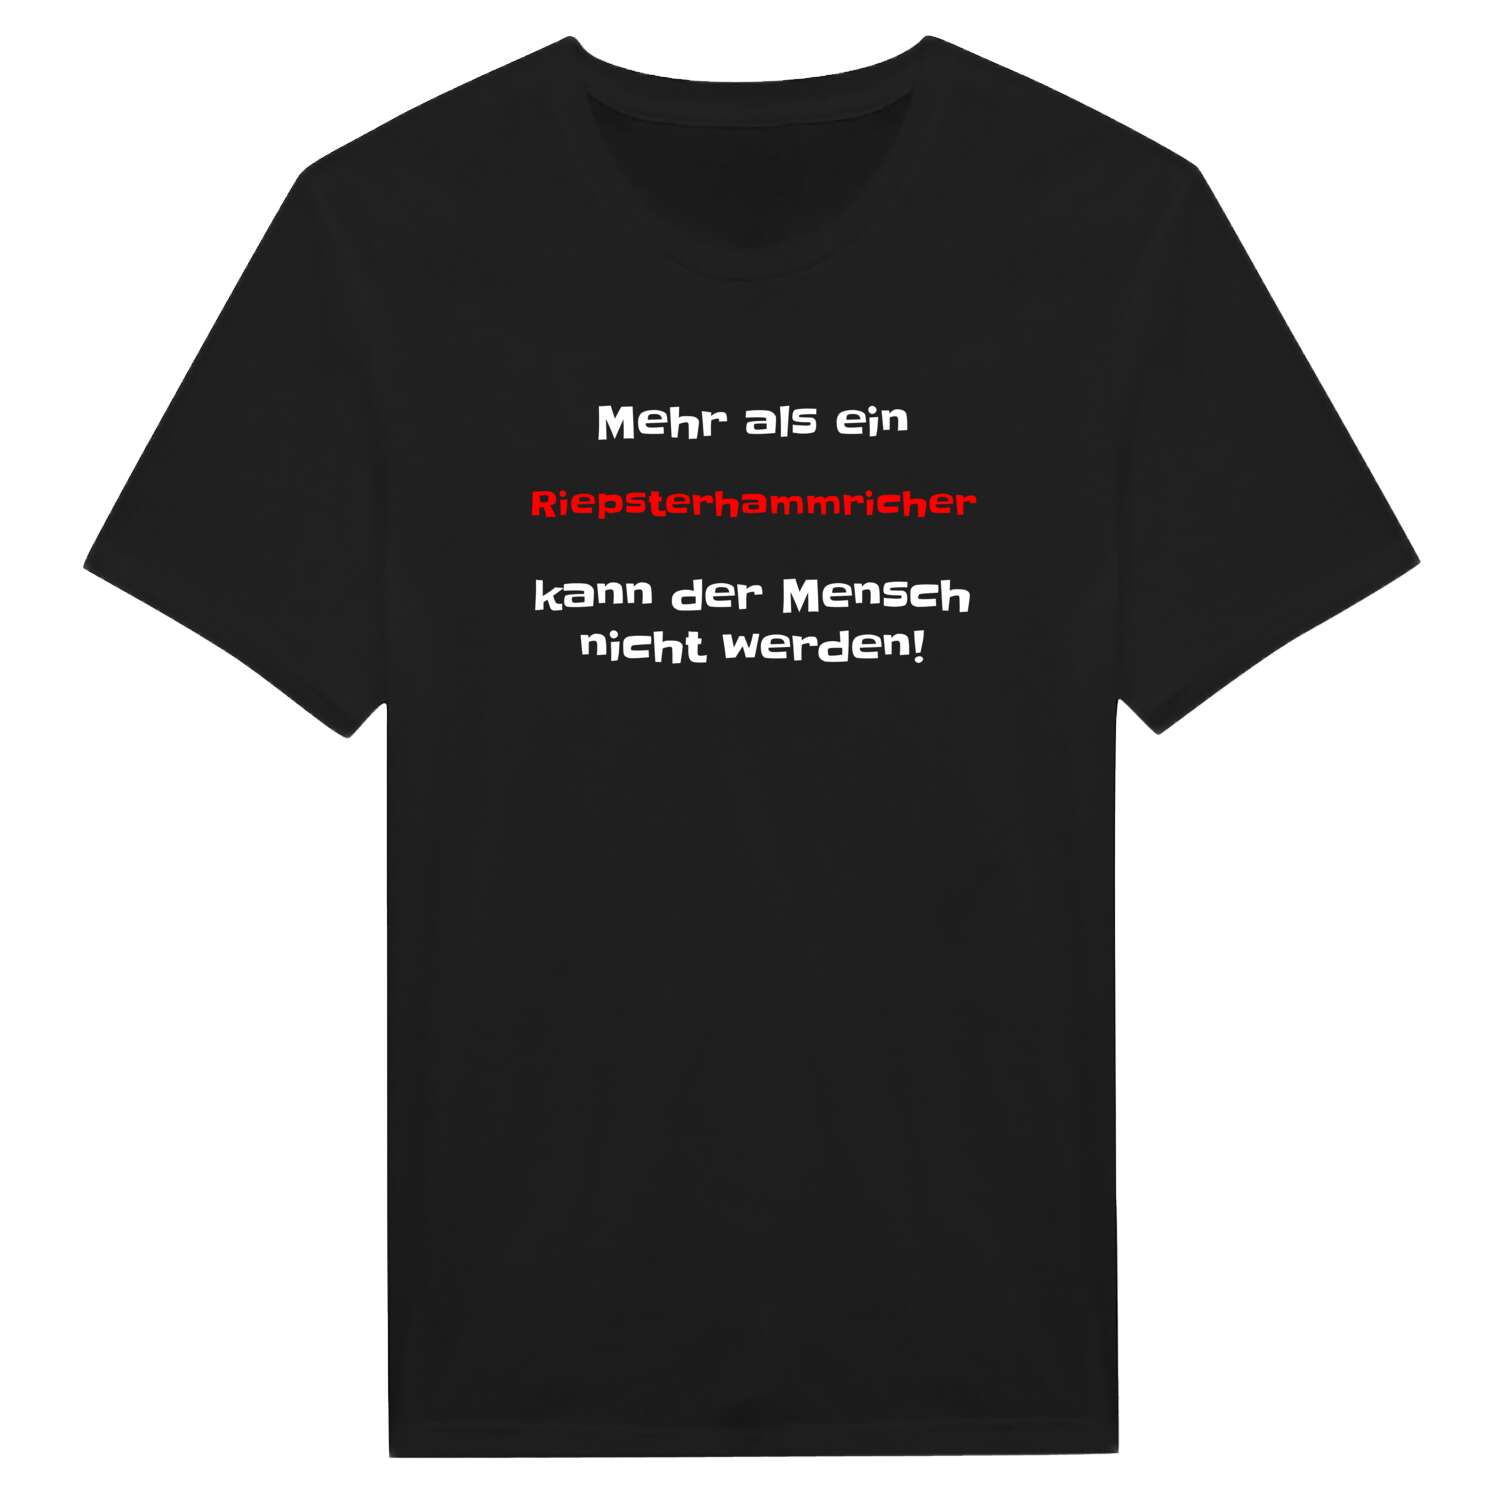 Riepsterhammrich T-Shirt »Mehr als ein«